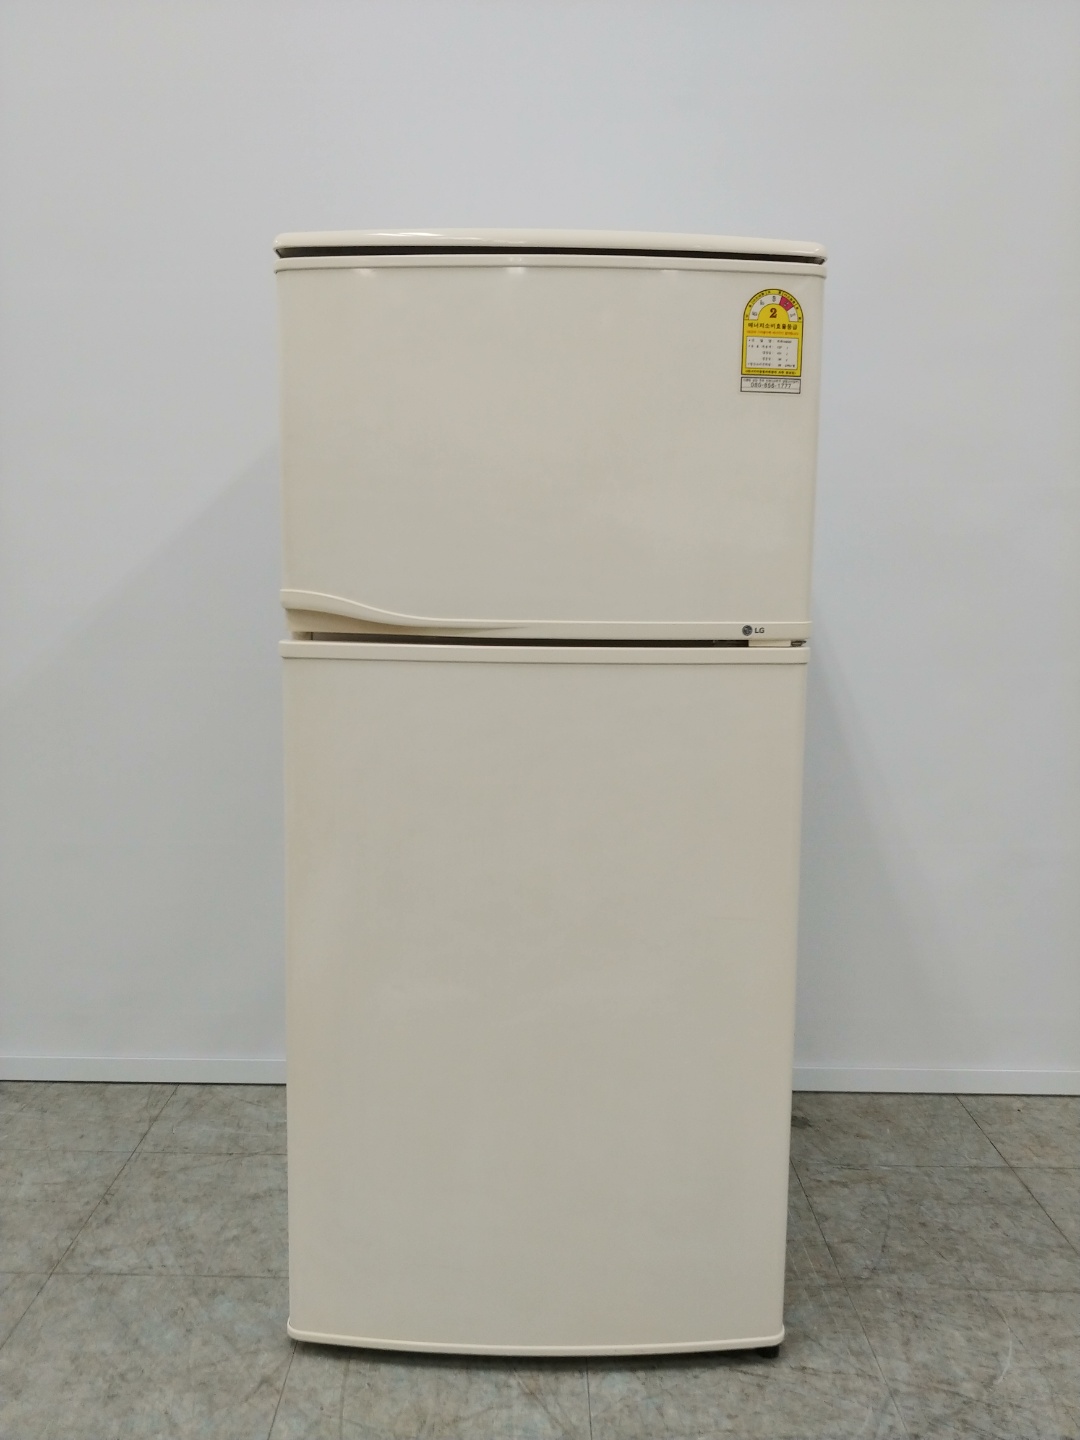 중고소형냉장고 LG전자 137리터 2002년 부천 011007